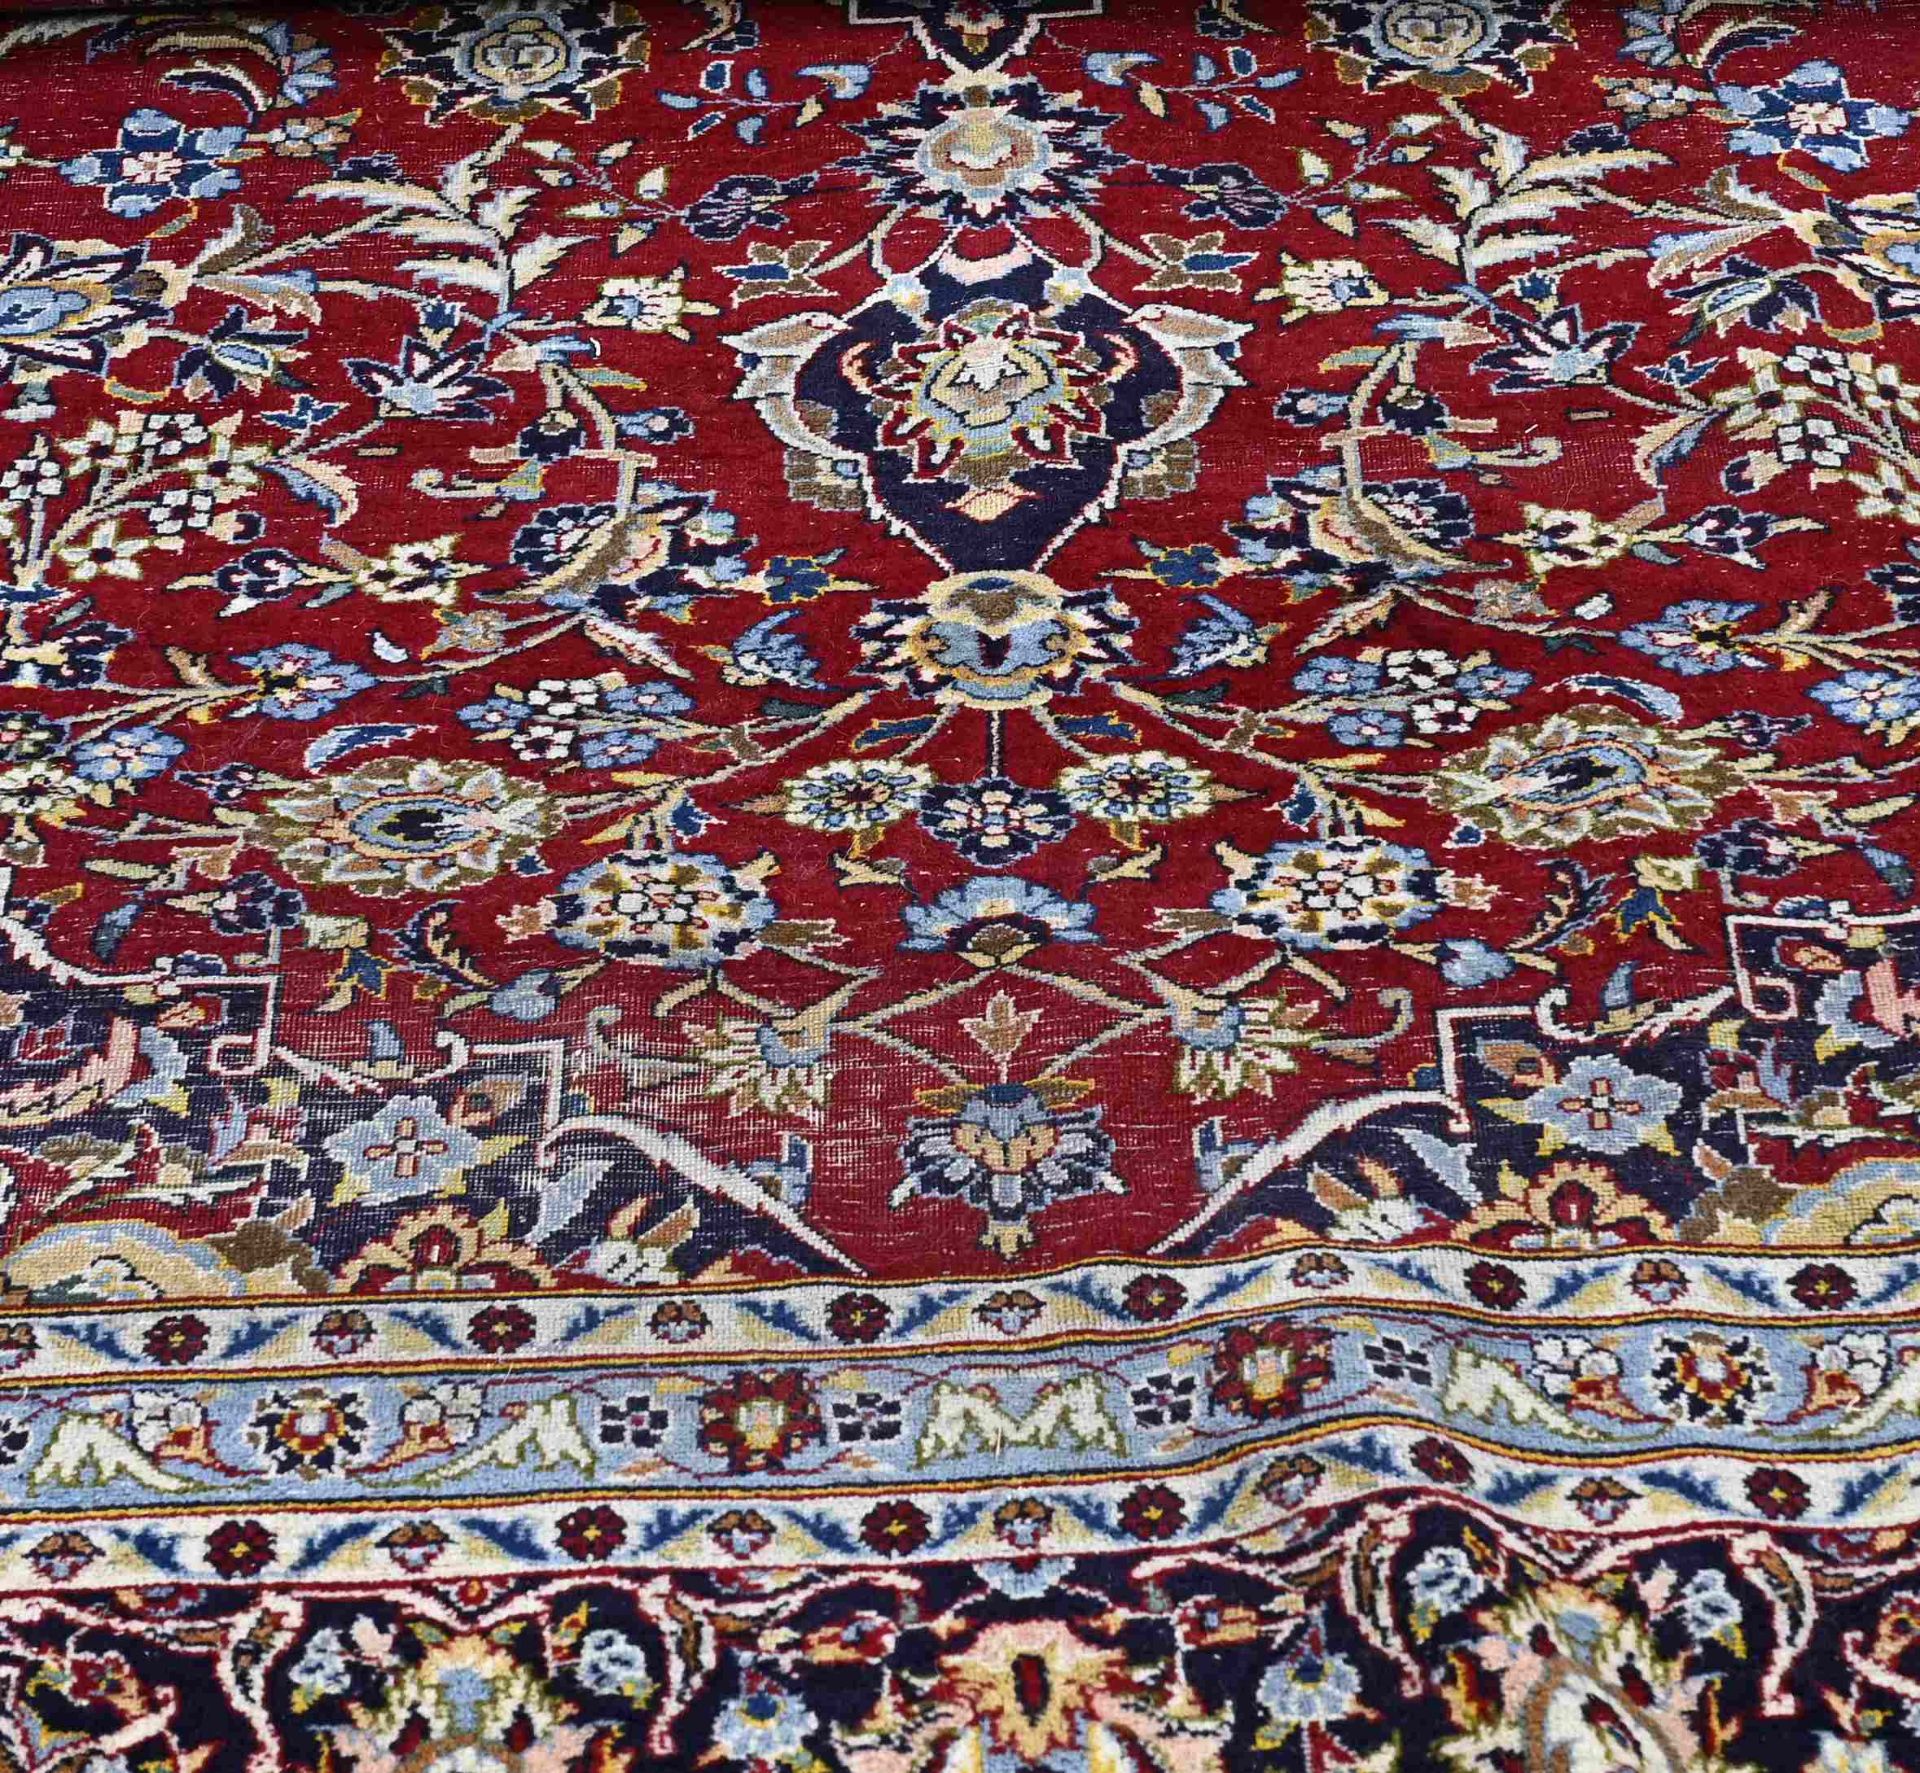 Large Persian rug, 300 x 400 cm. - Bild 2 aus 3